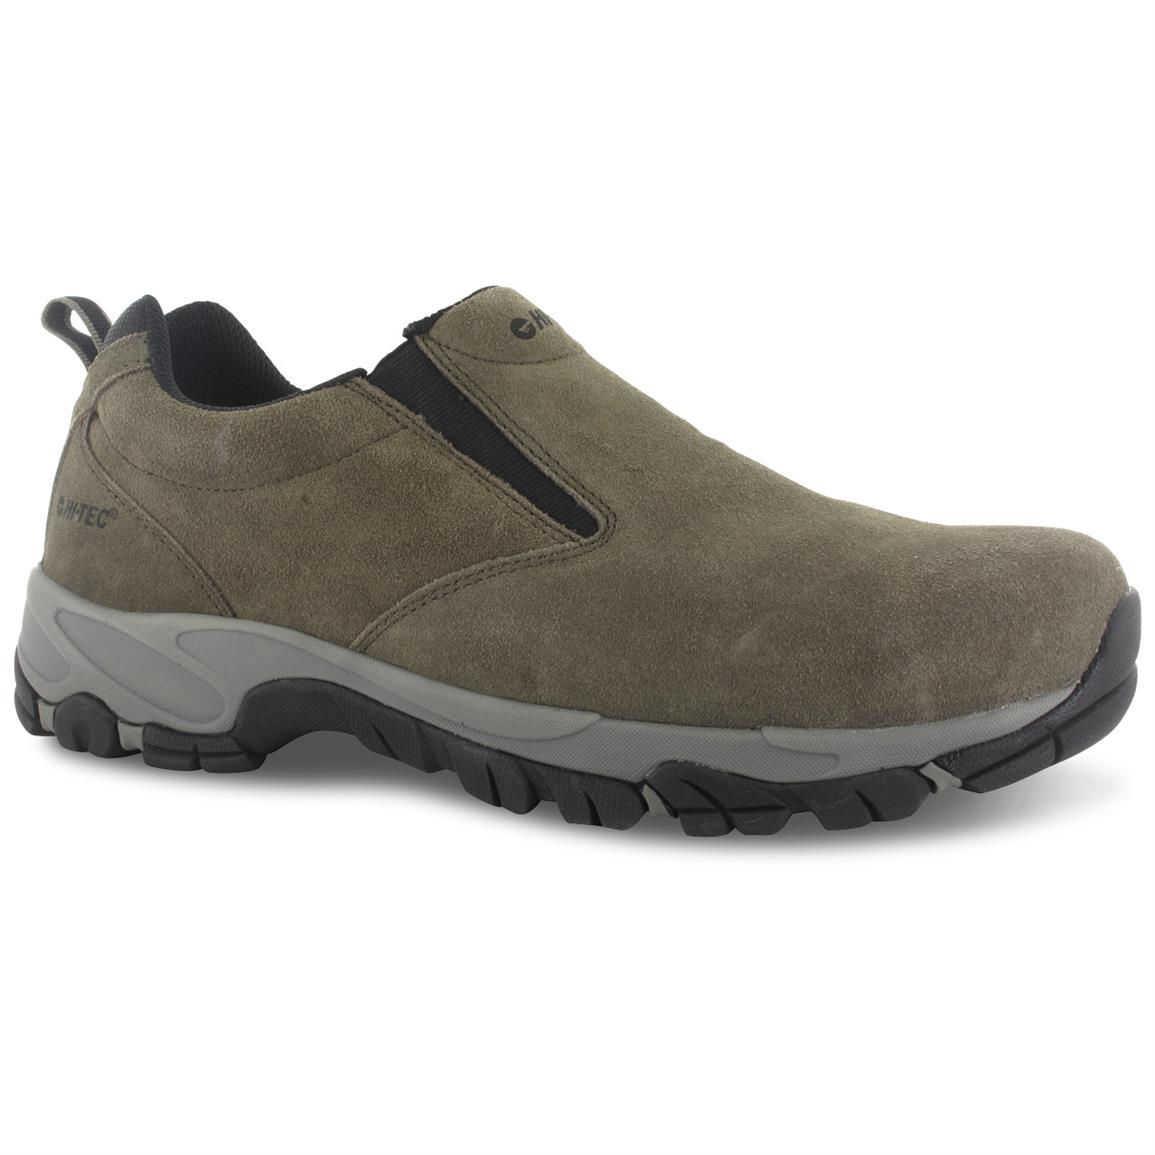 Men's Matterhorn® Vibram® Moc - toe Upland Boots, Brown - 148965 ...